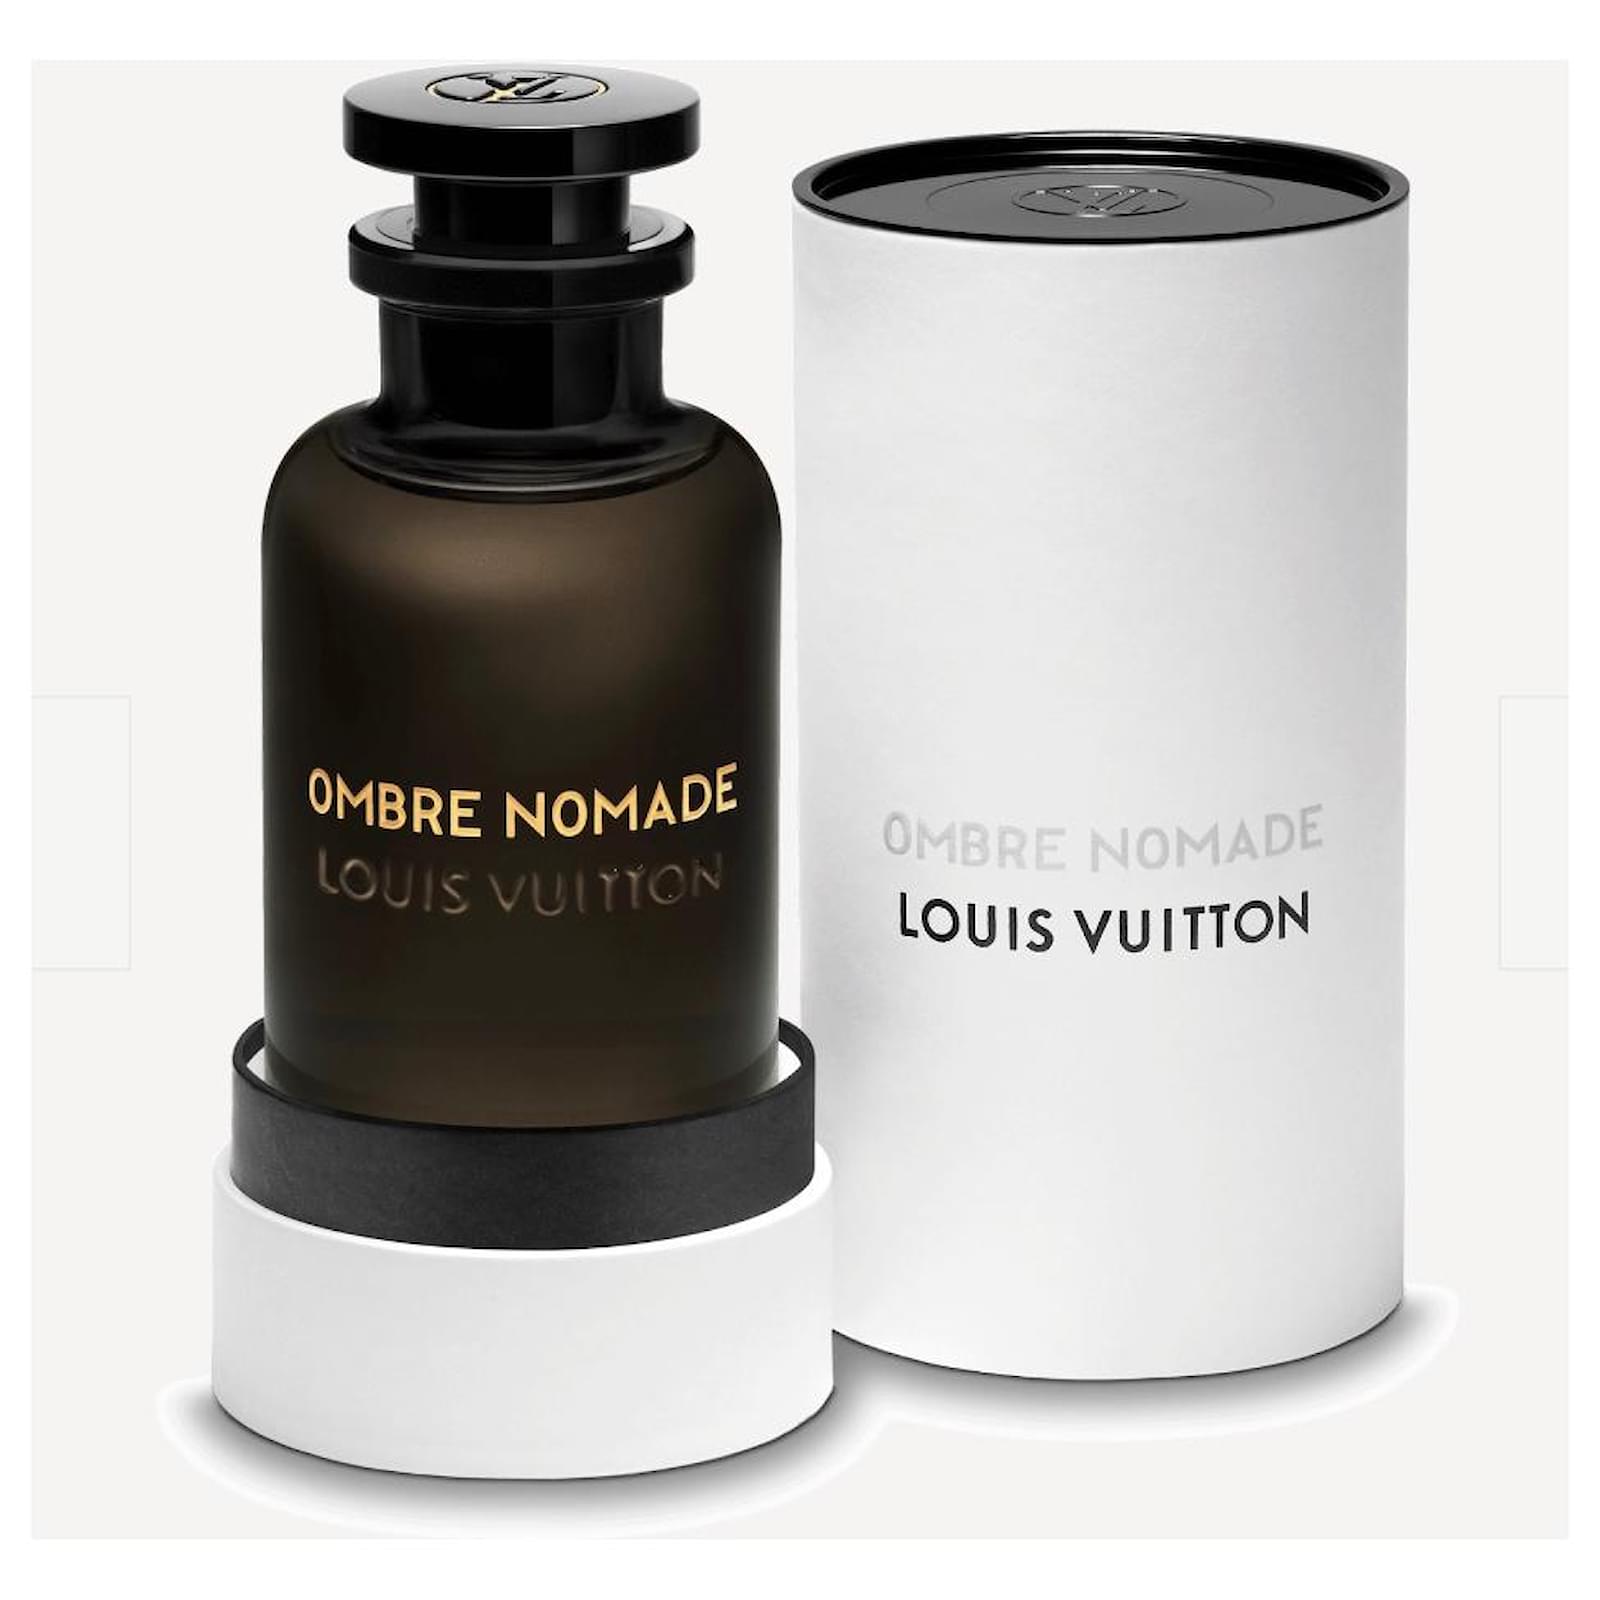 NEW Authentic Louis Vuitton Mens Perfume NOUVEAU MONDE Travel